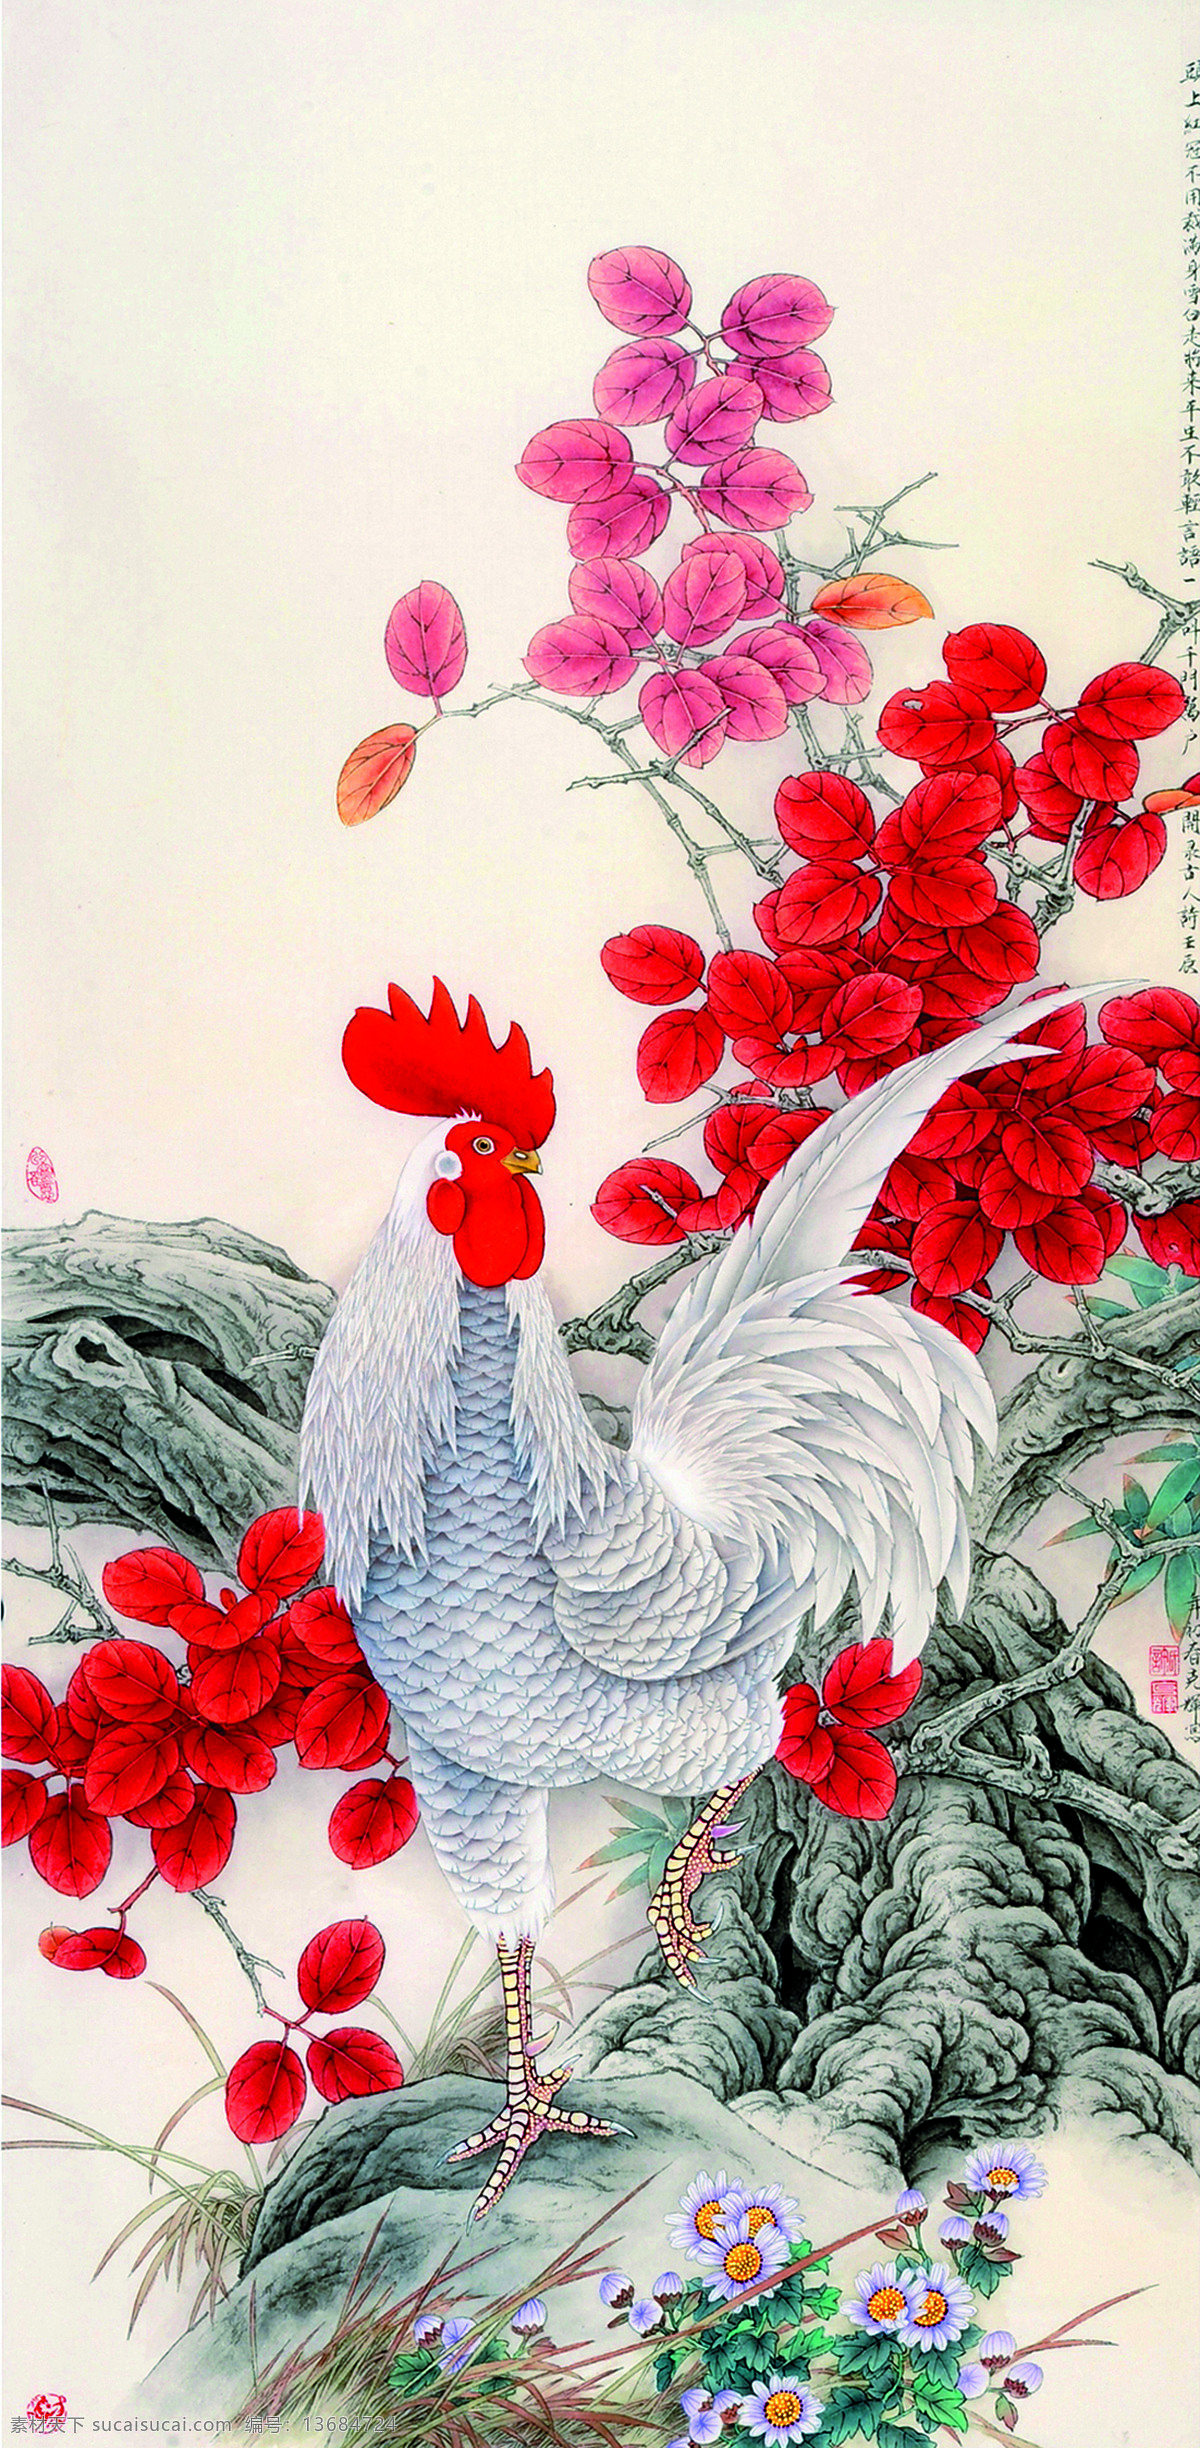 雄姿 美术 中国画 工笔画 花鸟画 白公鸡 红叶 小菊花 老树 许克辉国画 文化艺术 绘画书法